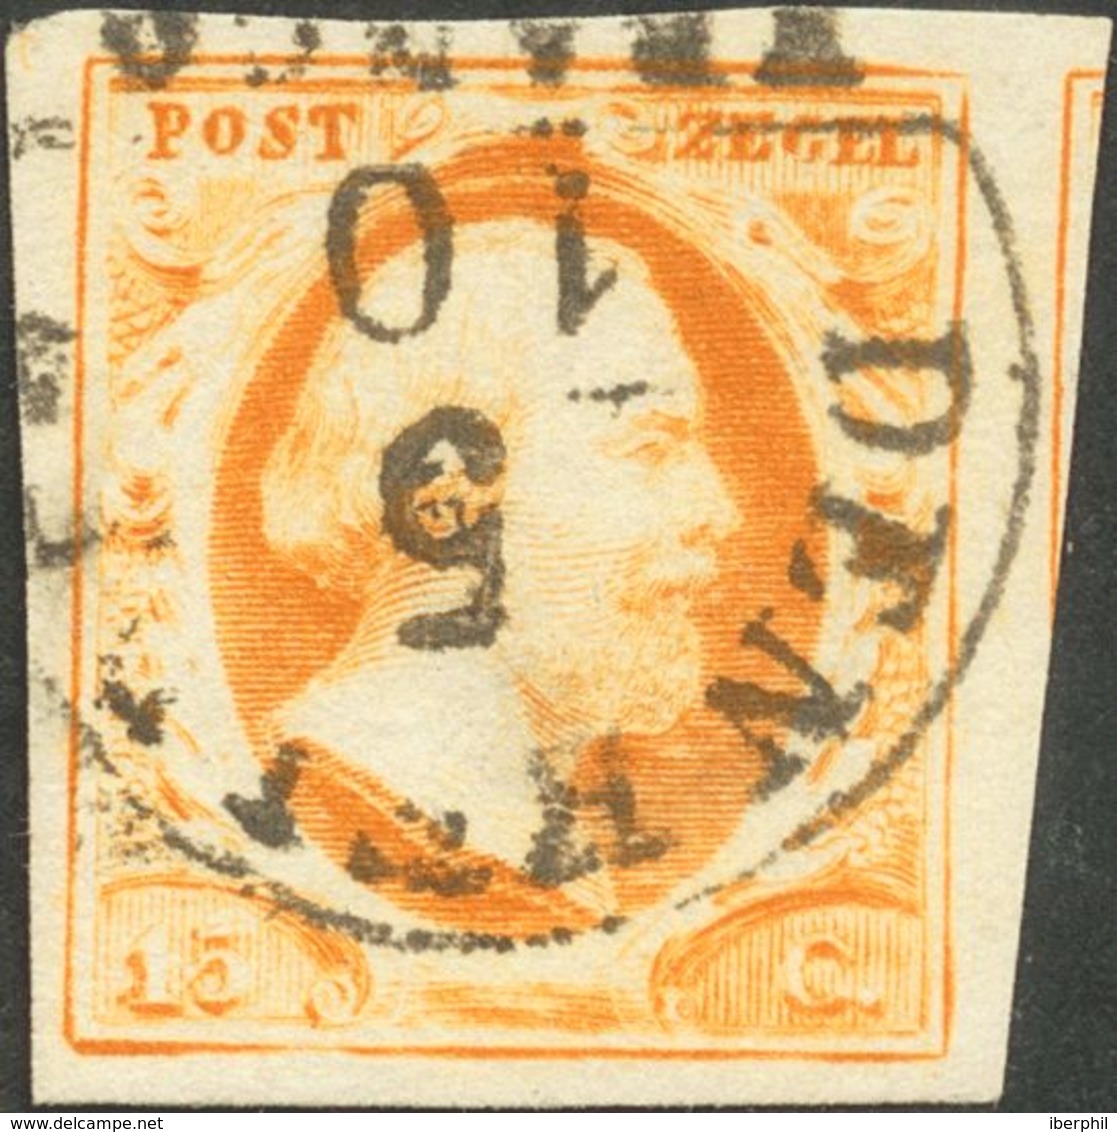 Holanda. ºYv 3. 1852. 15 Cent Dark Orange. Cancelled With DEN HELDER Datestamp Type A (Ey 250). VERY FINE. -- Netherland - ...-1852 Préphilatélie